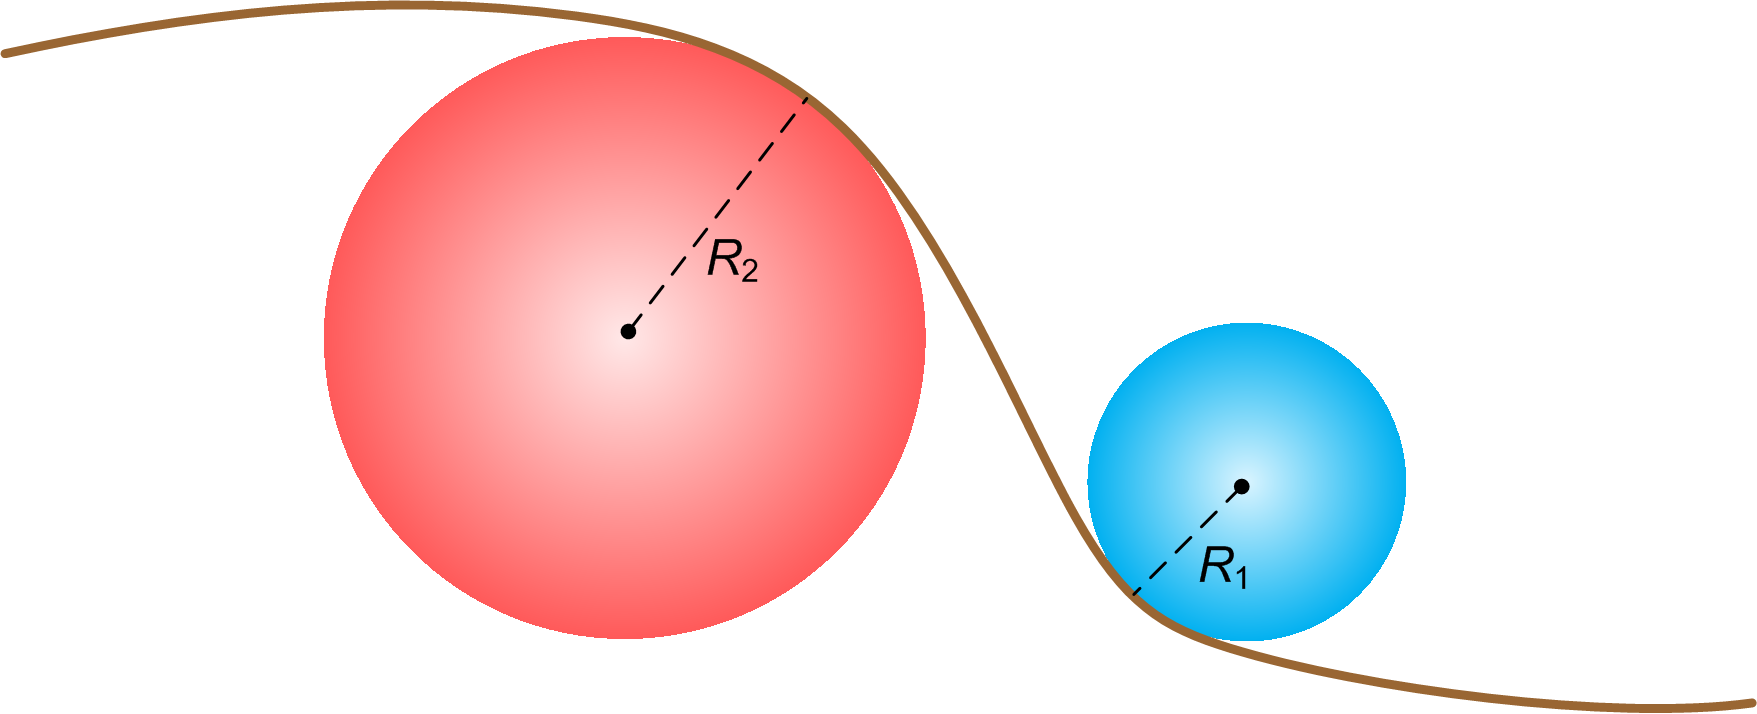 Рис. 8 Кривизна линий в заданной точке составляет 1/R , т.е. обратна радиусу R круга, вписанного в кривую в данной точке. В науках про землю согласовано, что кривизна положительная для выпуклых форм поверхности (R2>0) и отрицательная – для вогнутых (R1<0) (Geomorphometry… 2008)